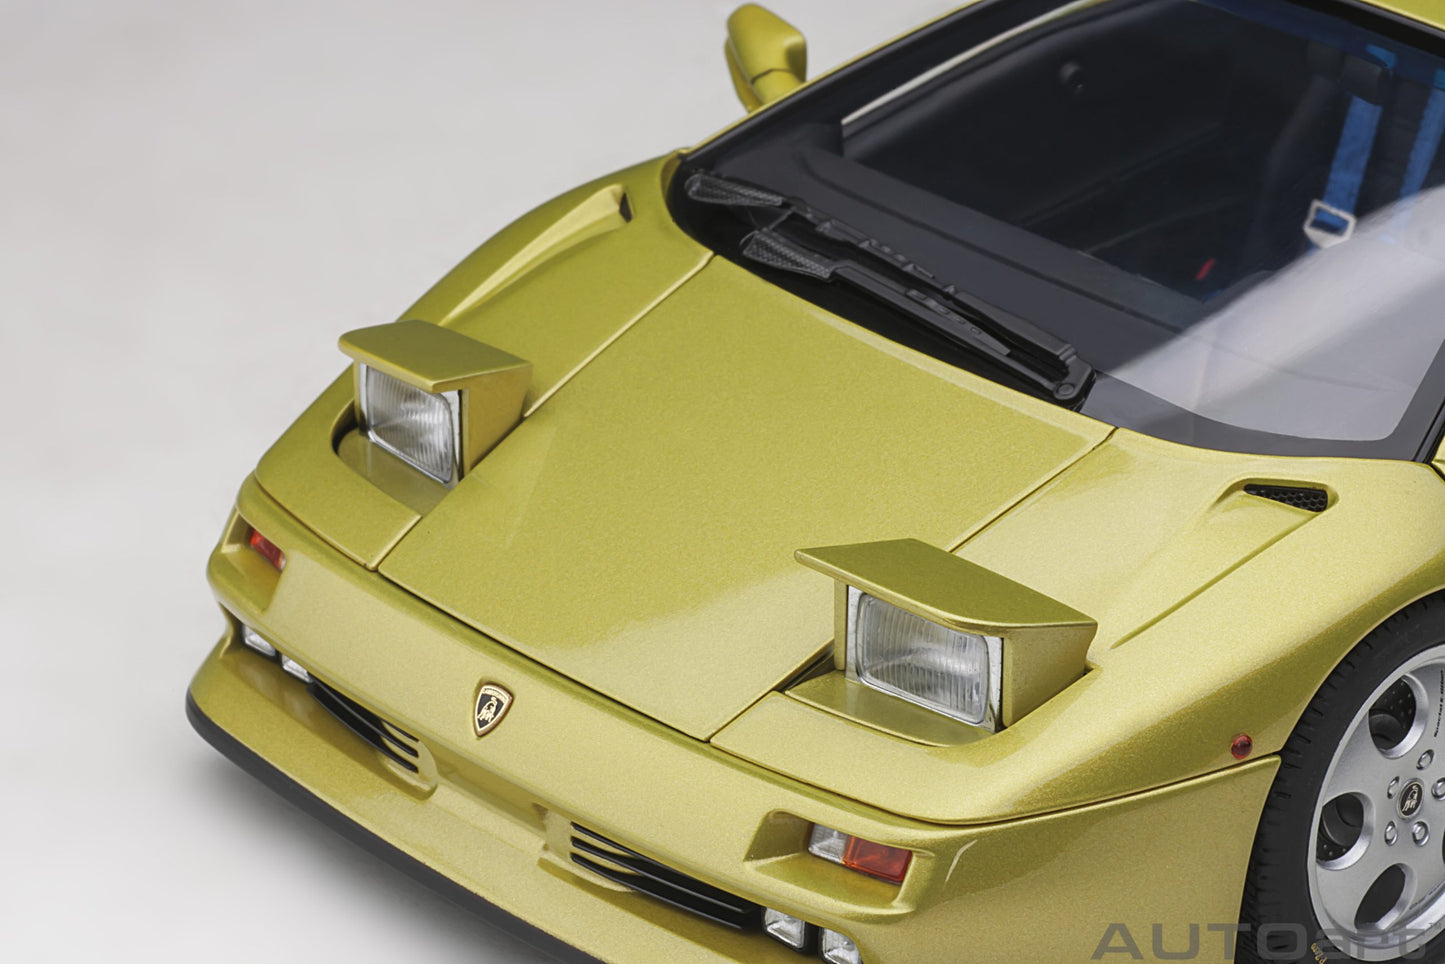 AUTOart 1:18 Lamborghini Diablo SE 30th Anniversary Edition (Giallo Spyder) 79157